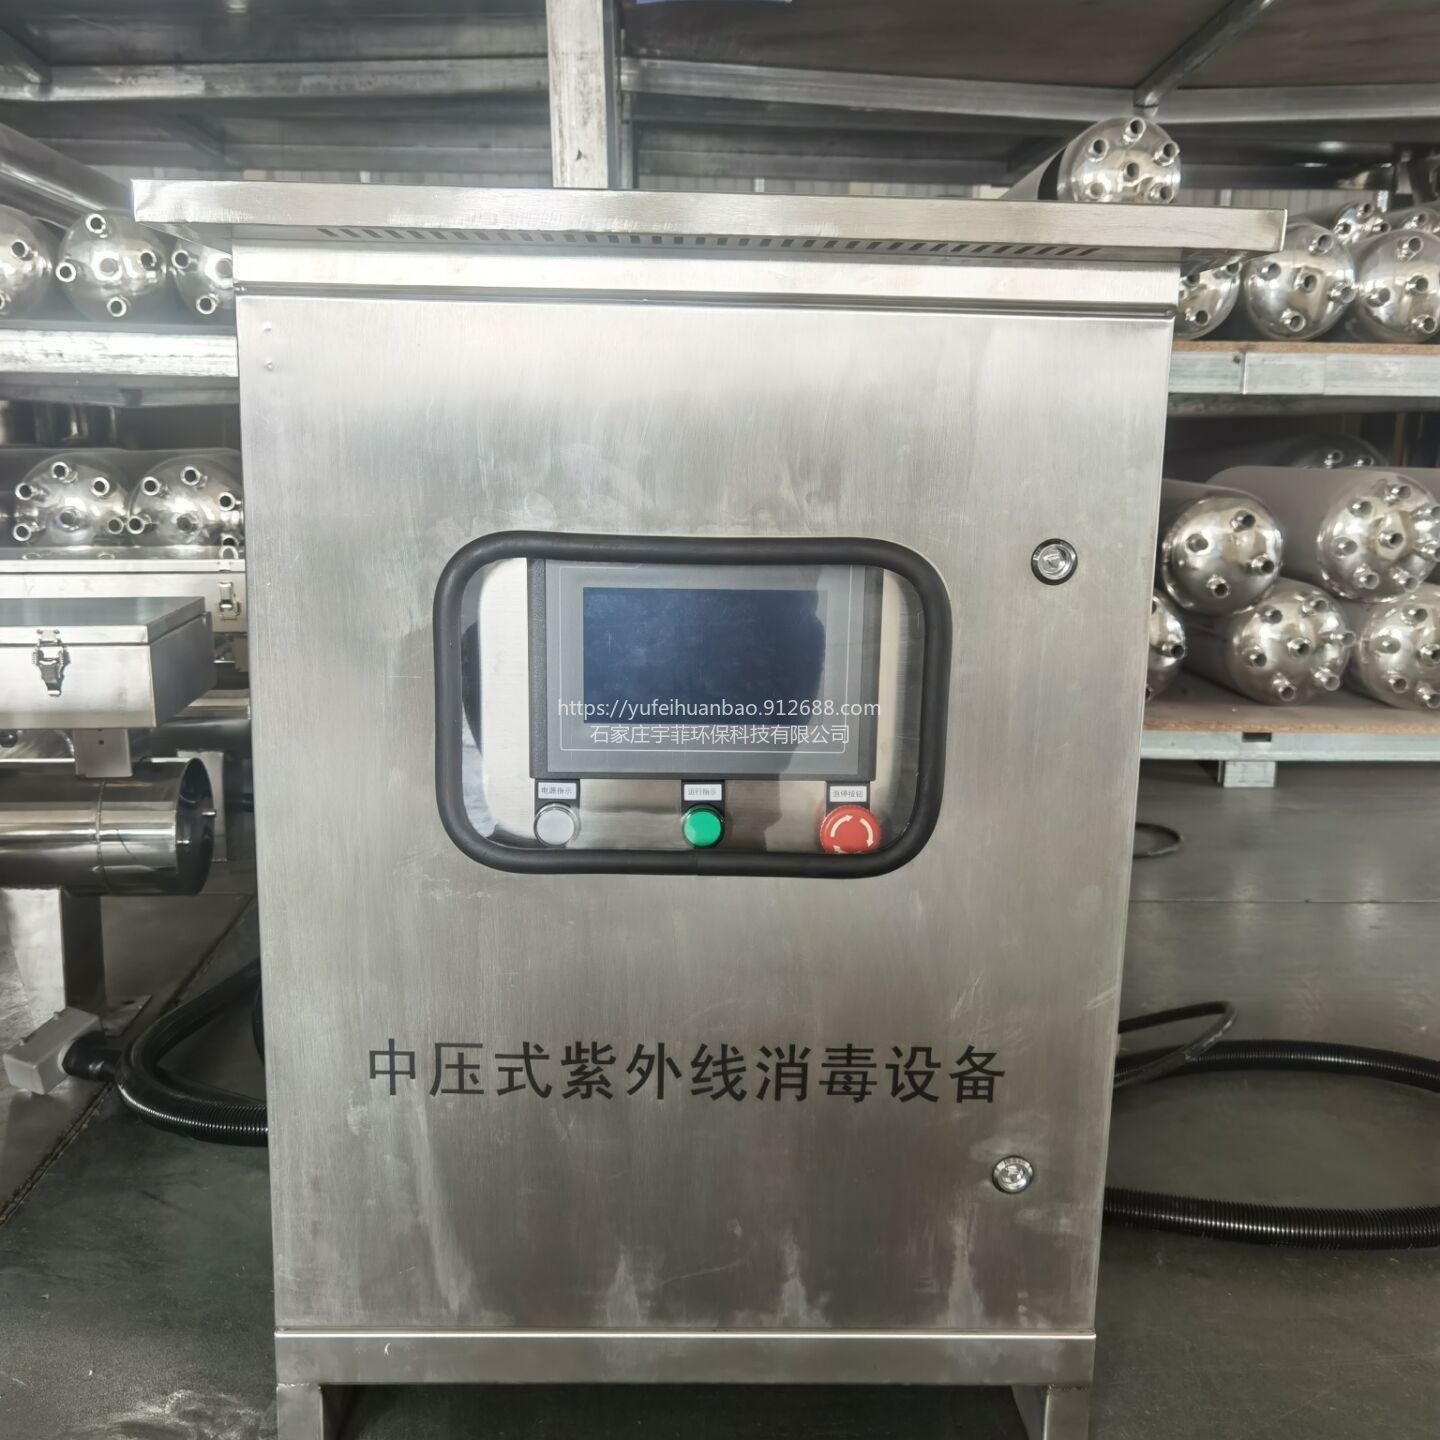 宇菲供应 水族馆用水杀菌设备宇菲  中压紫外线消毒器   TLZX32-30D  304食品级不锈钢图片